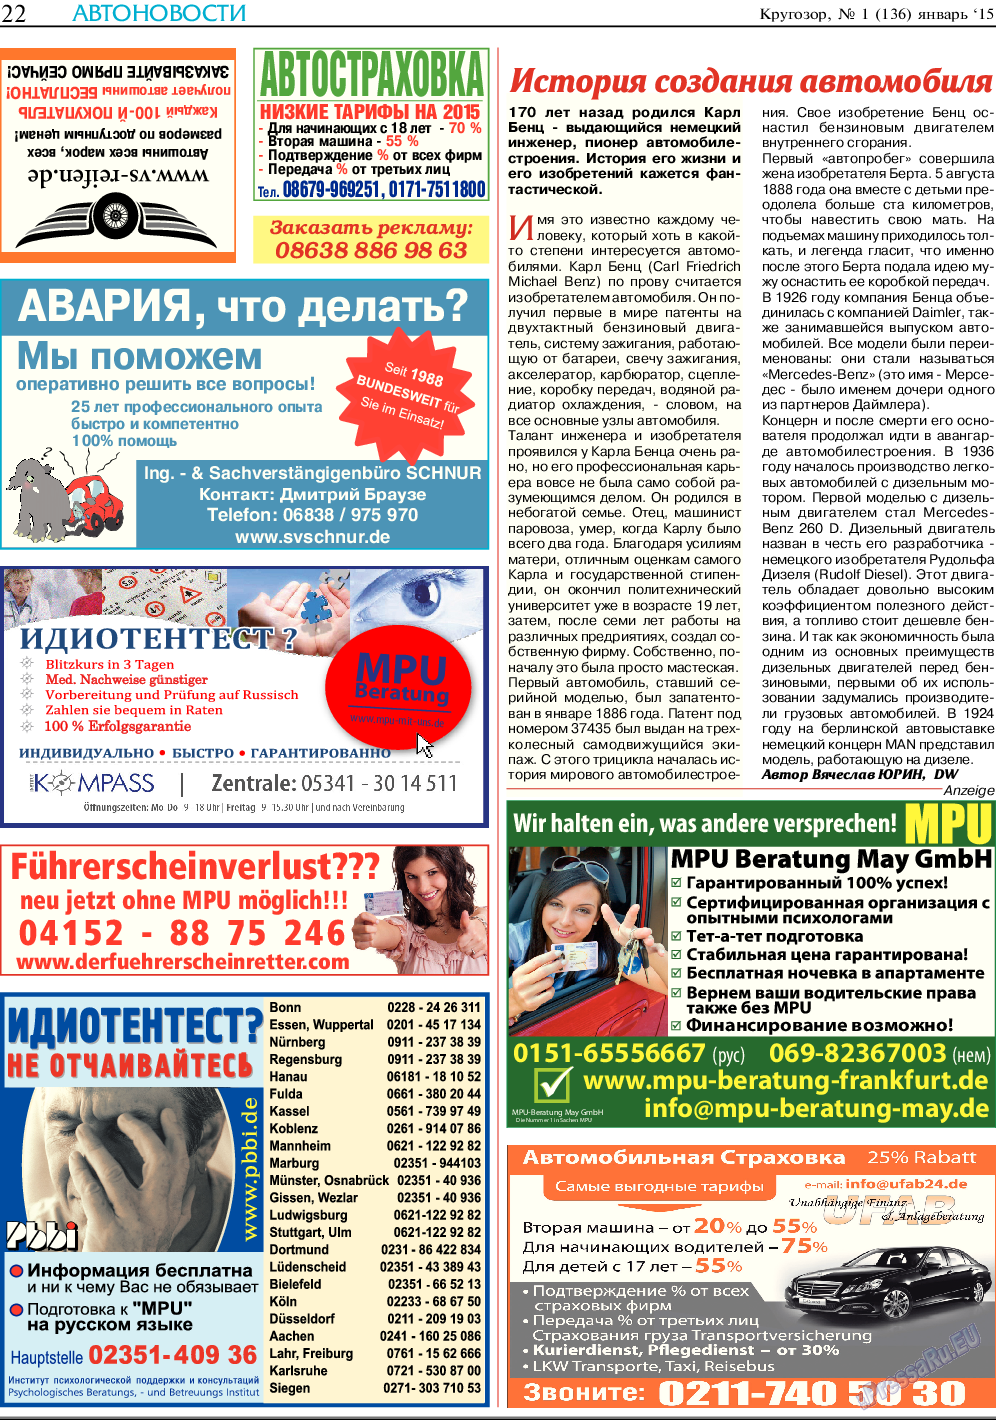 Кругозор, газета. 2015 №1 стр.22